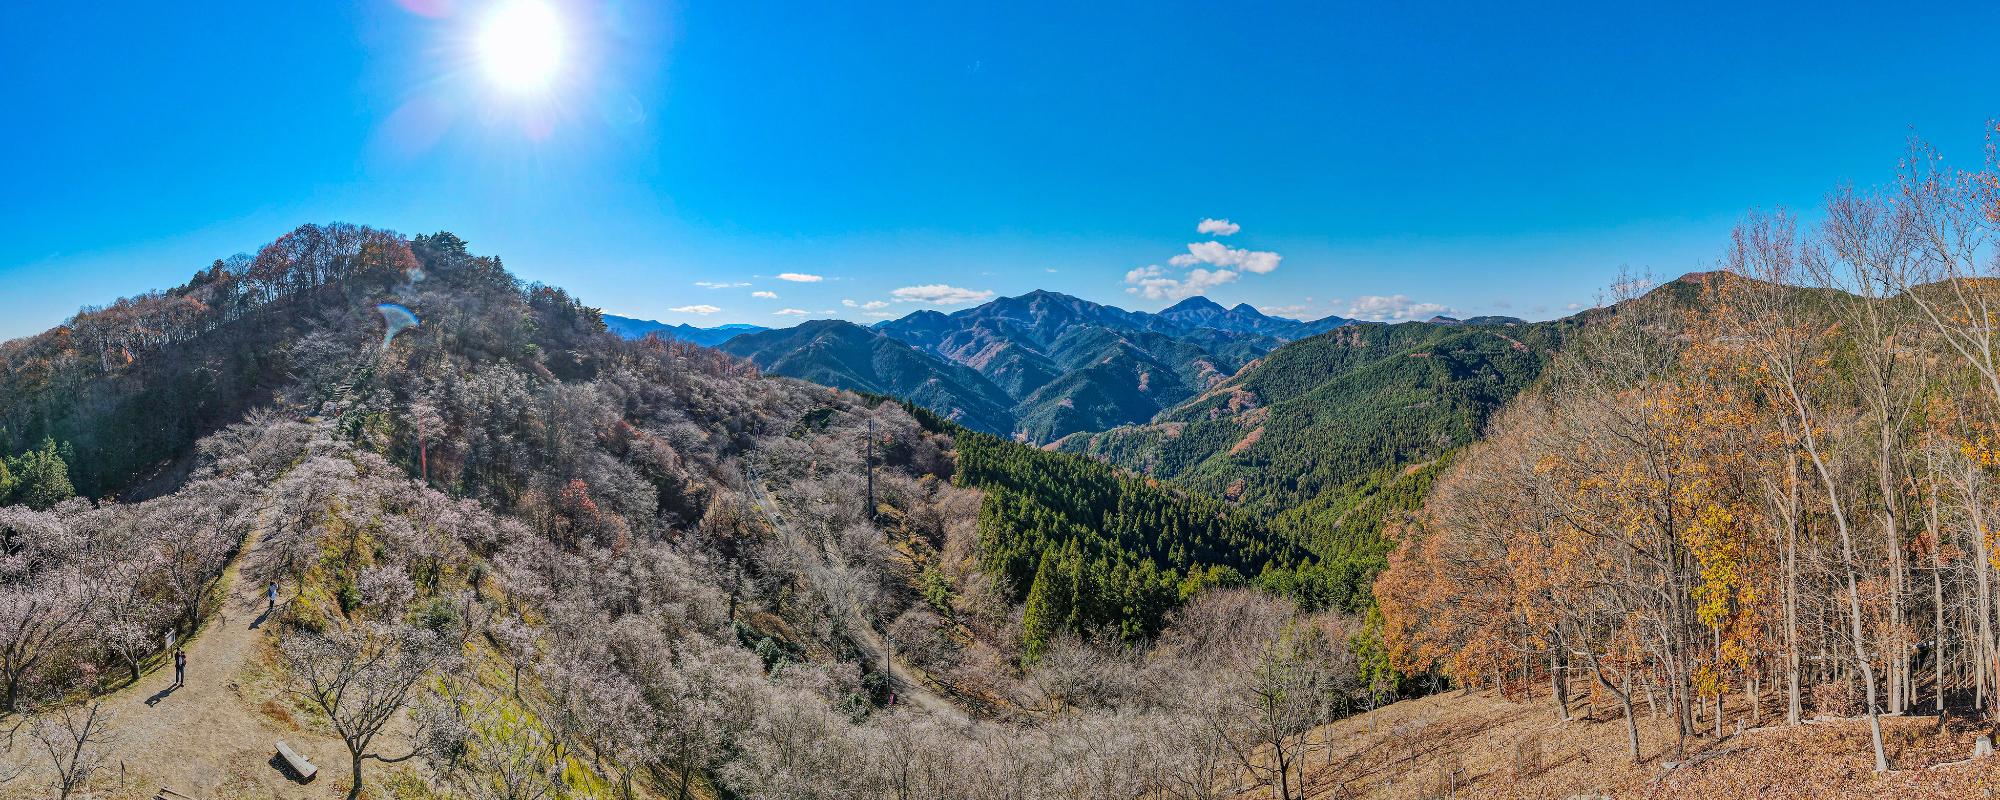 桜山公園展望台からの眺め